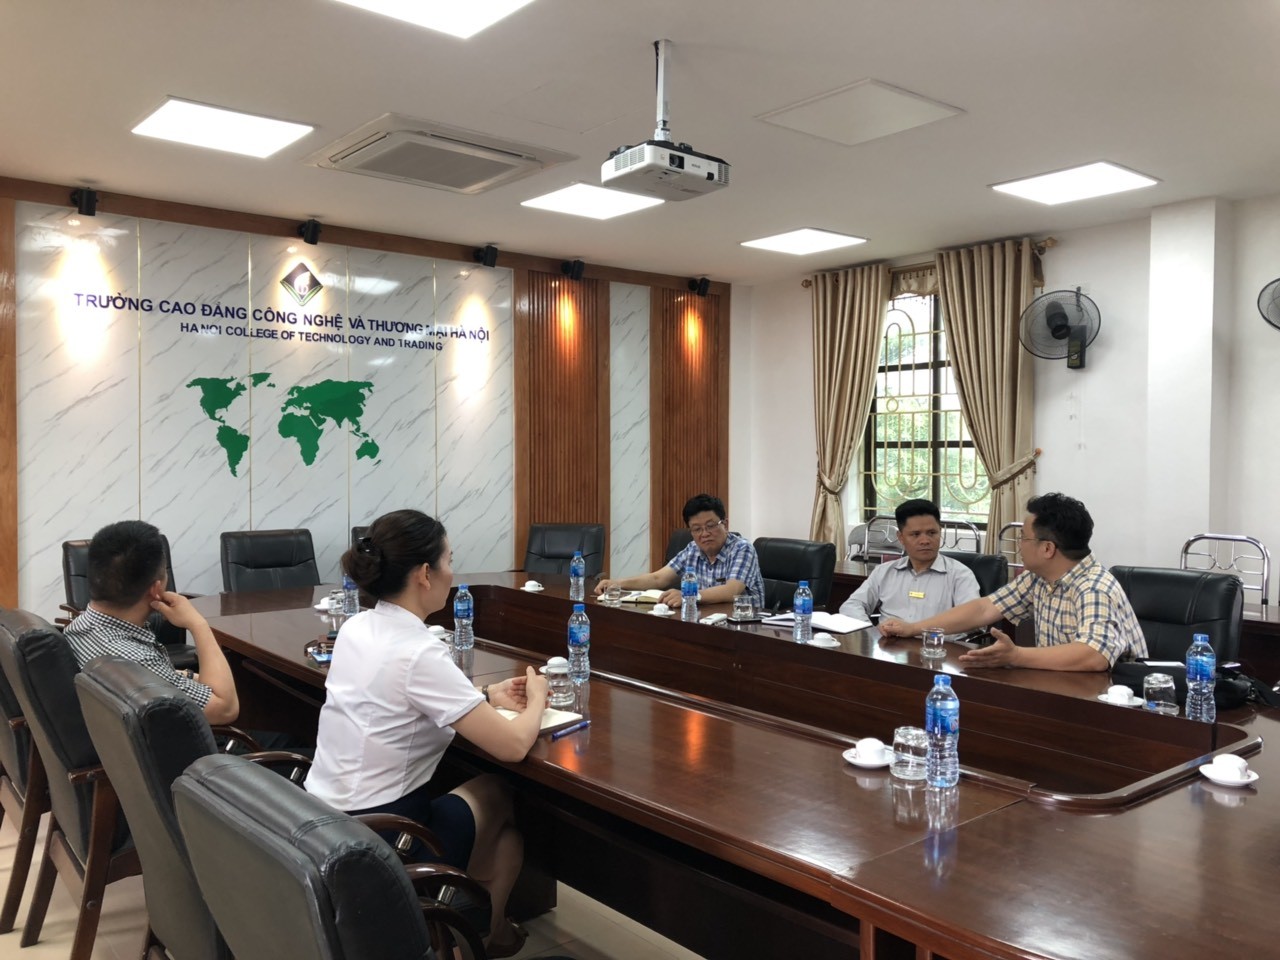 Buổi làm việc trao đổi về hợp tác giữa Công ty Cổ phần Đạo tạo Huấn luyện Nghiệp vụ Hàng không Việt Nam và Trường Cao đẳng Công nghệ và Thương mại Hà Nội